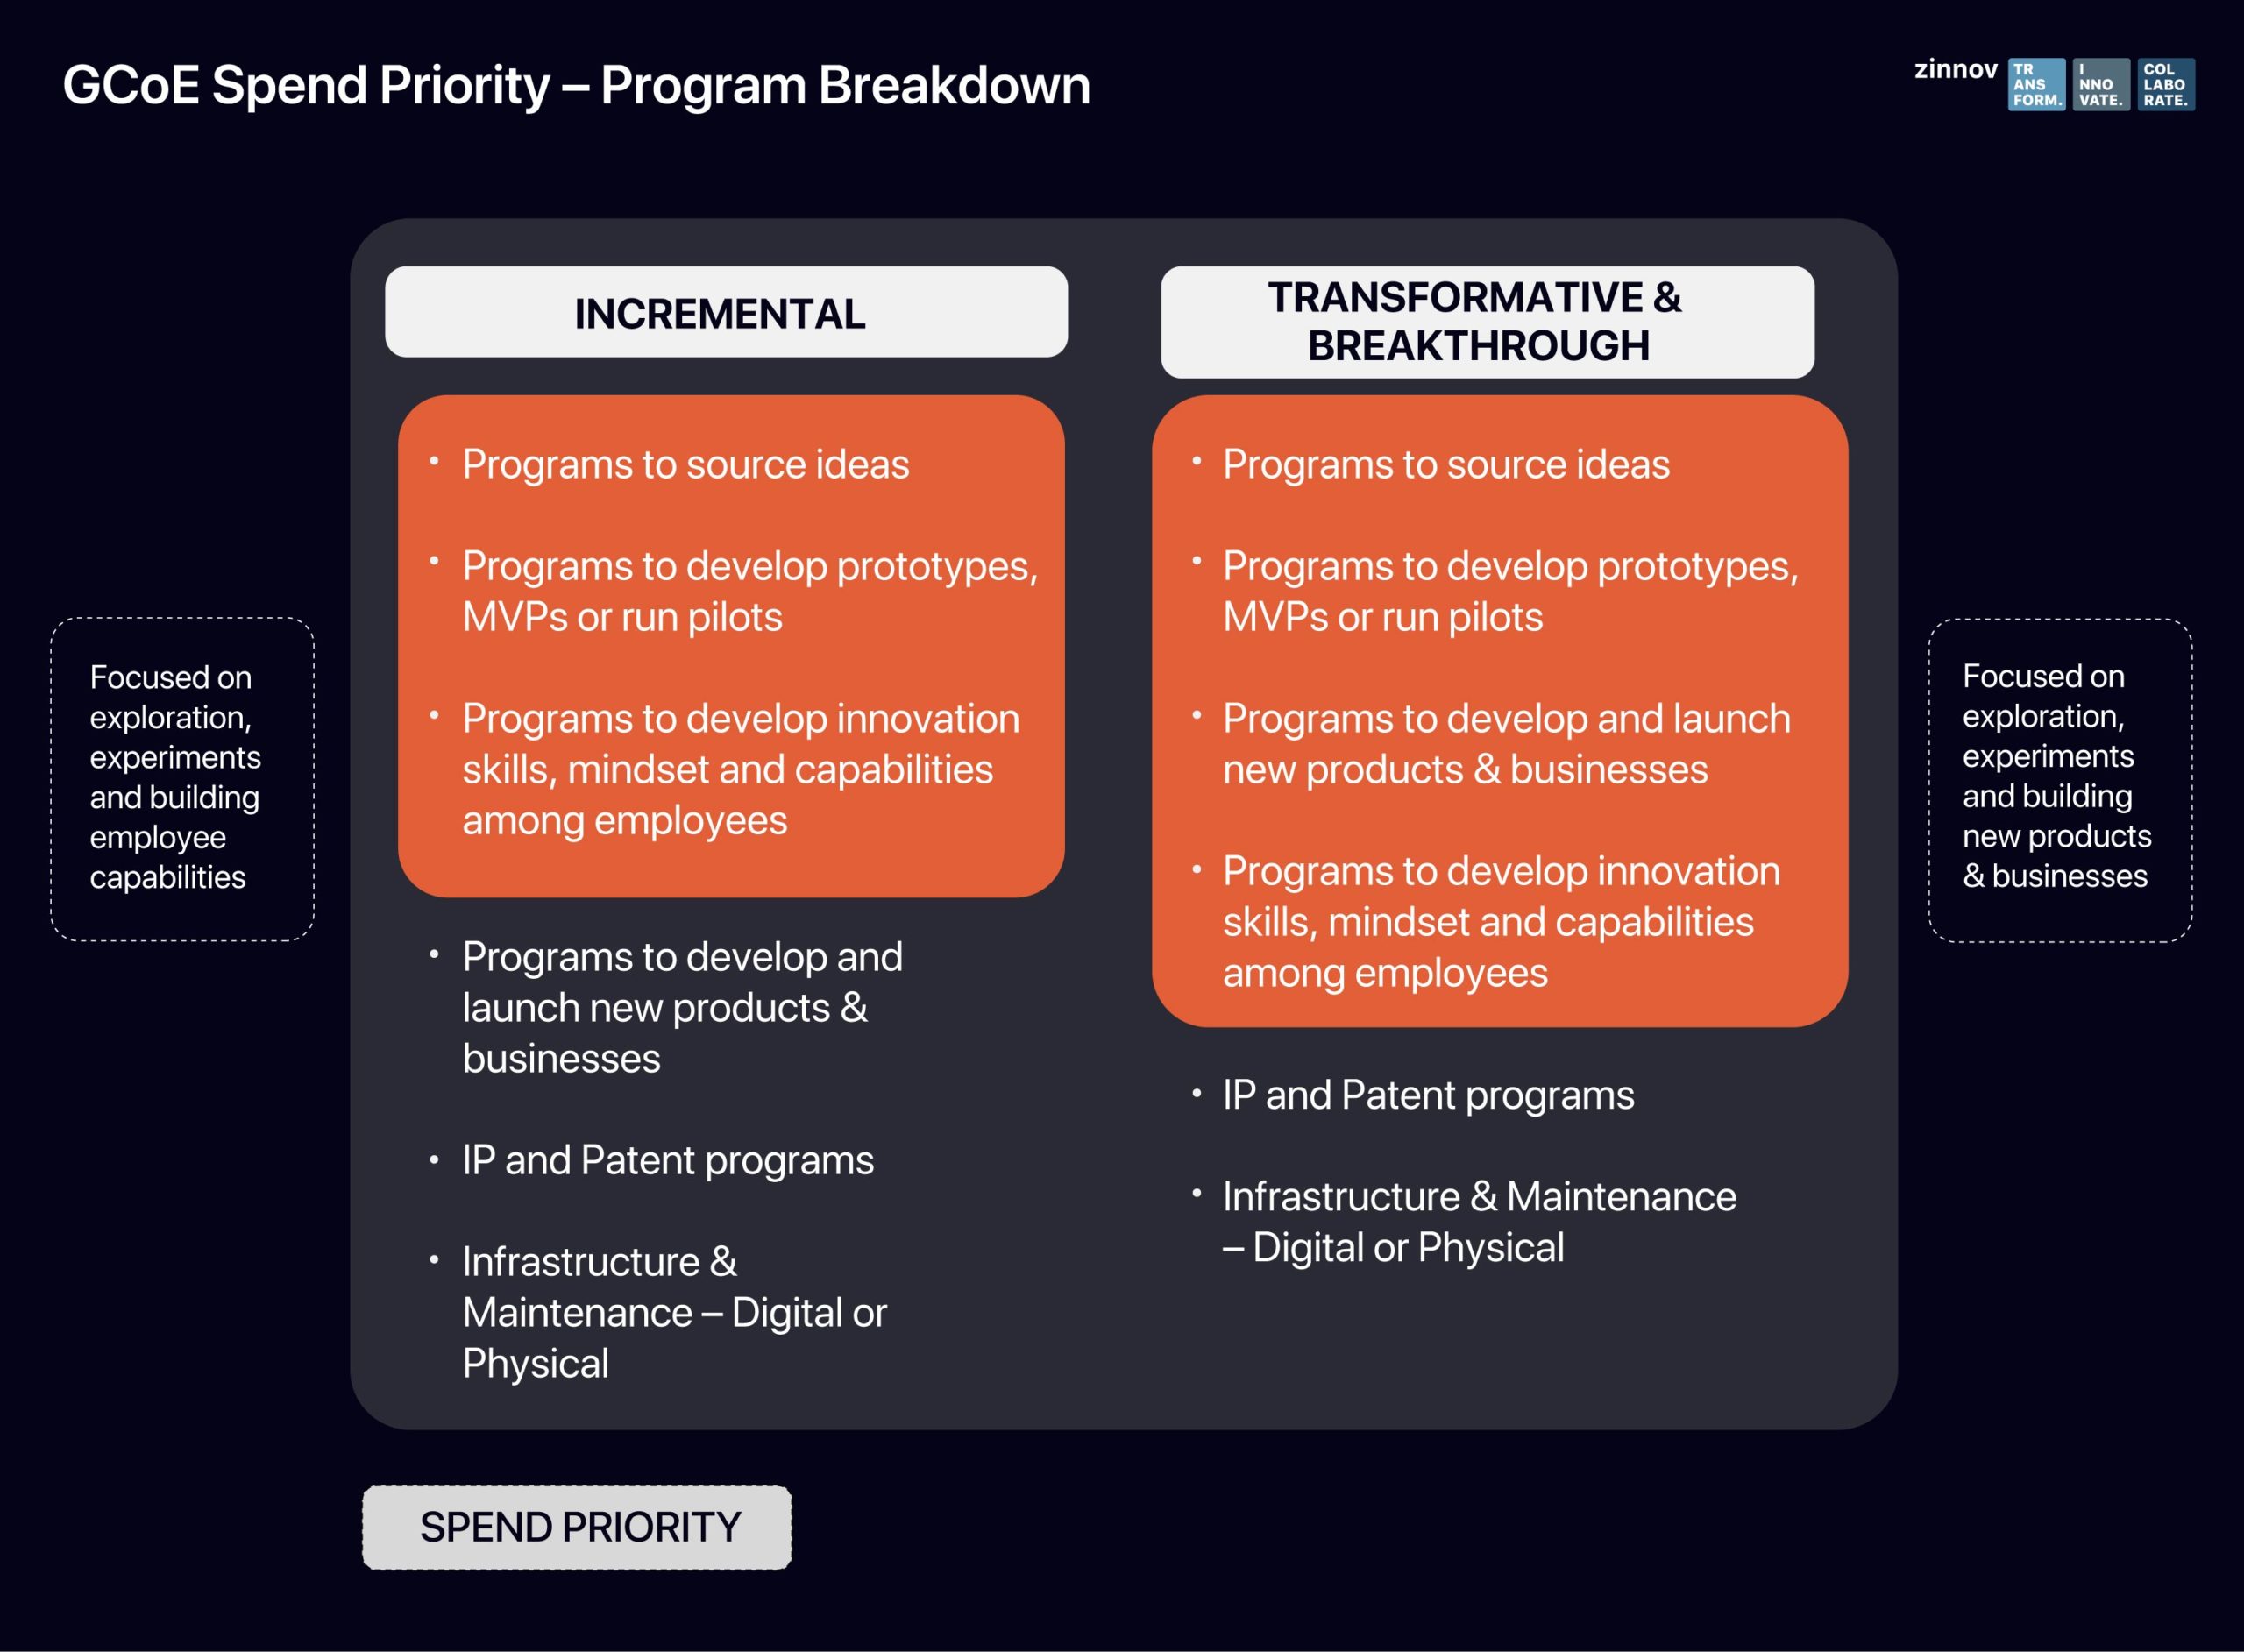 GCoE spend priority - program breakdown